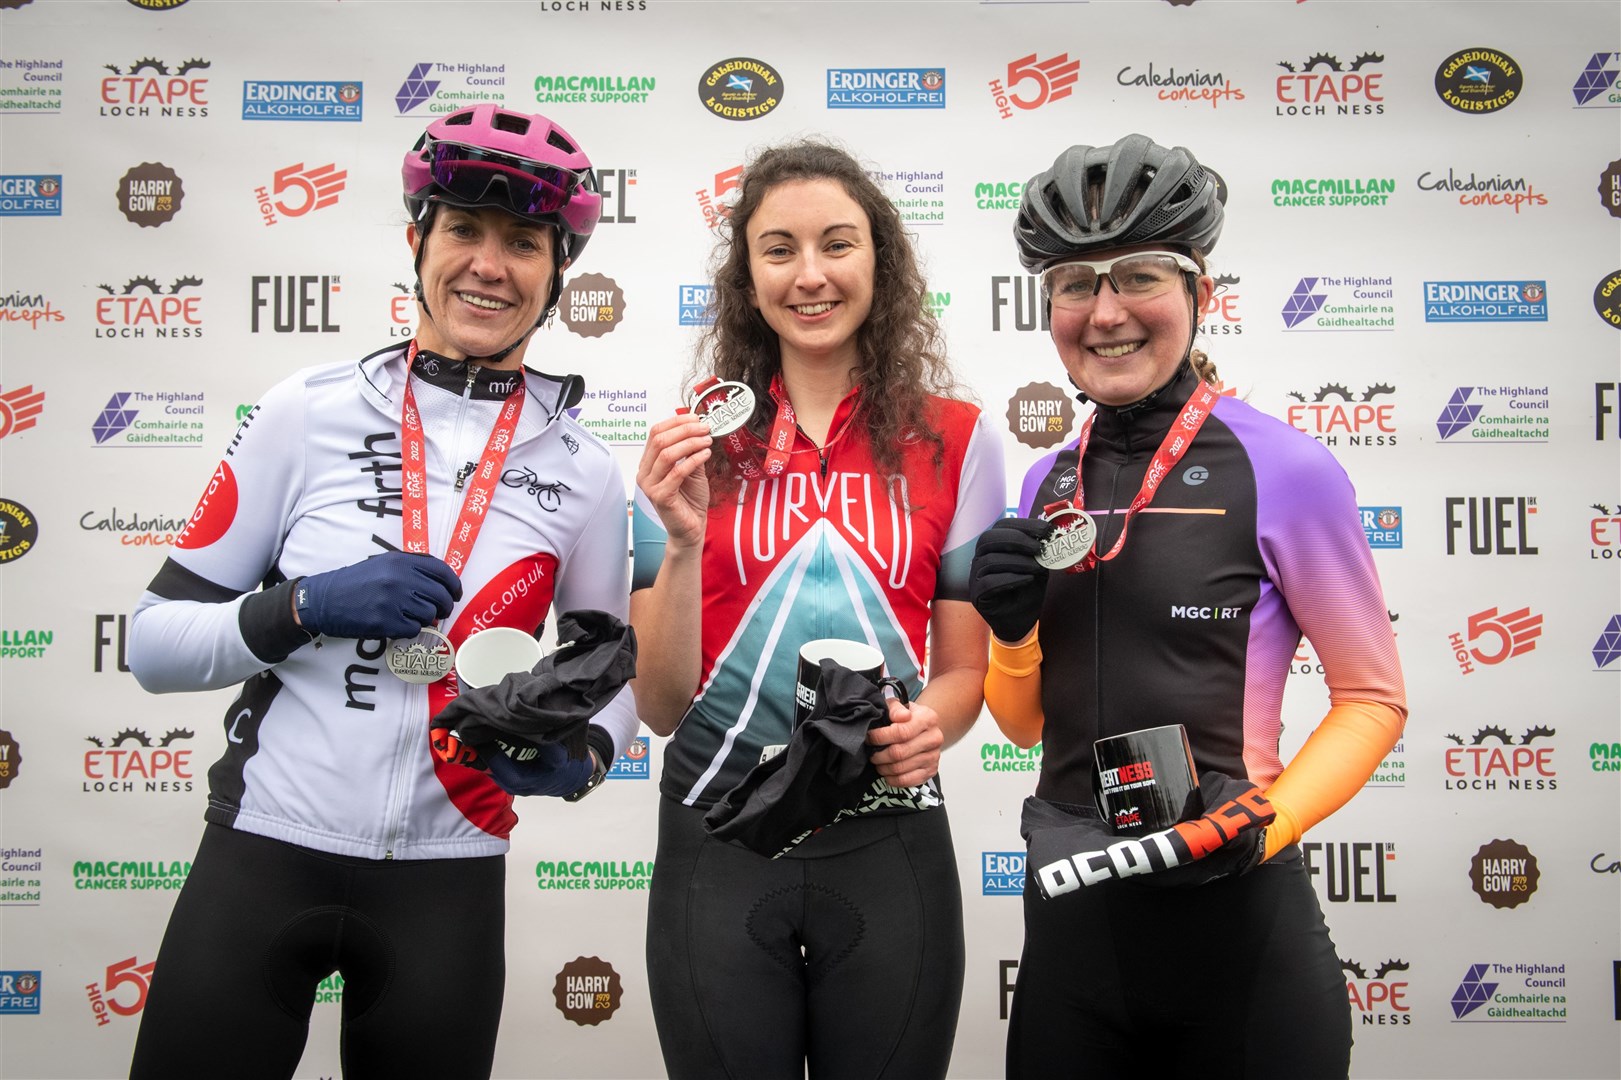 Fastest females podium Lynne Cordiner, Catriona Lockie and Natalie Munro. Picture: Callum Mackay.